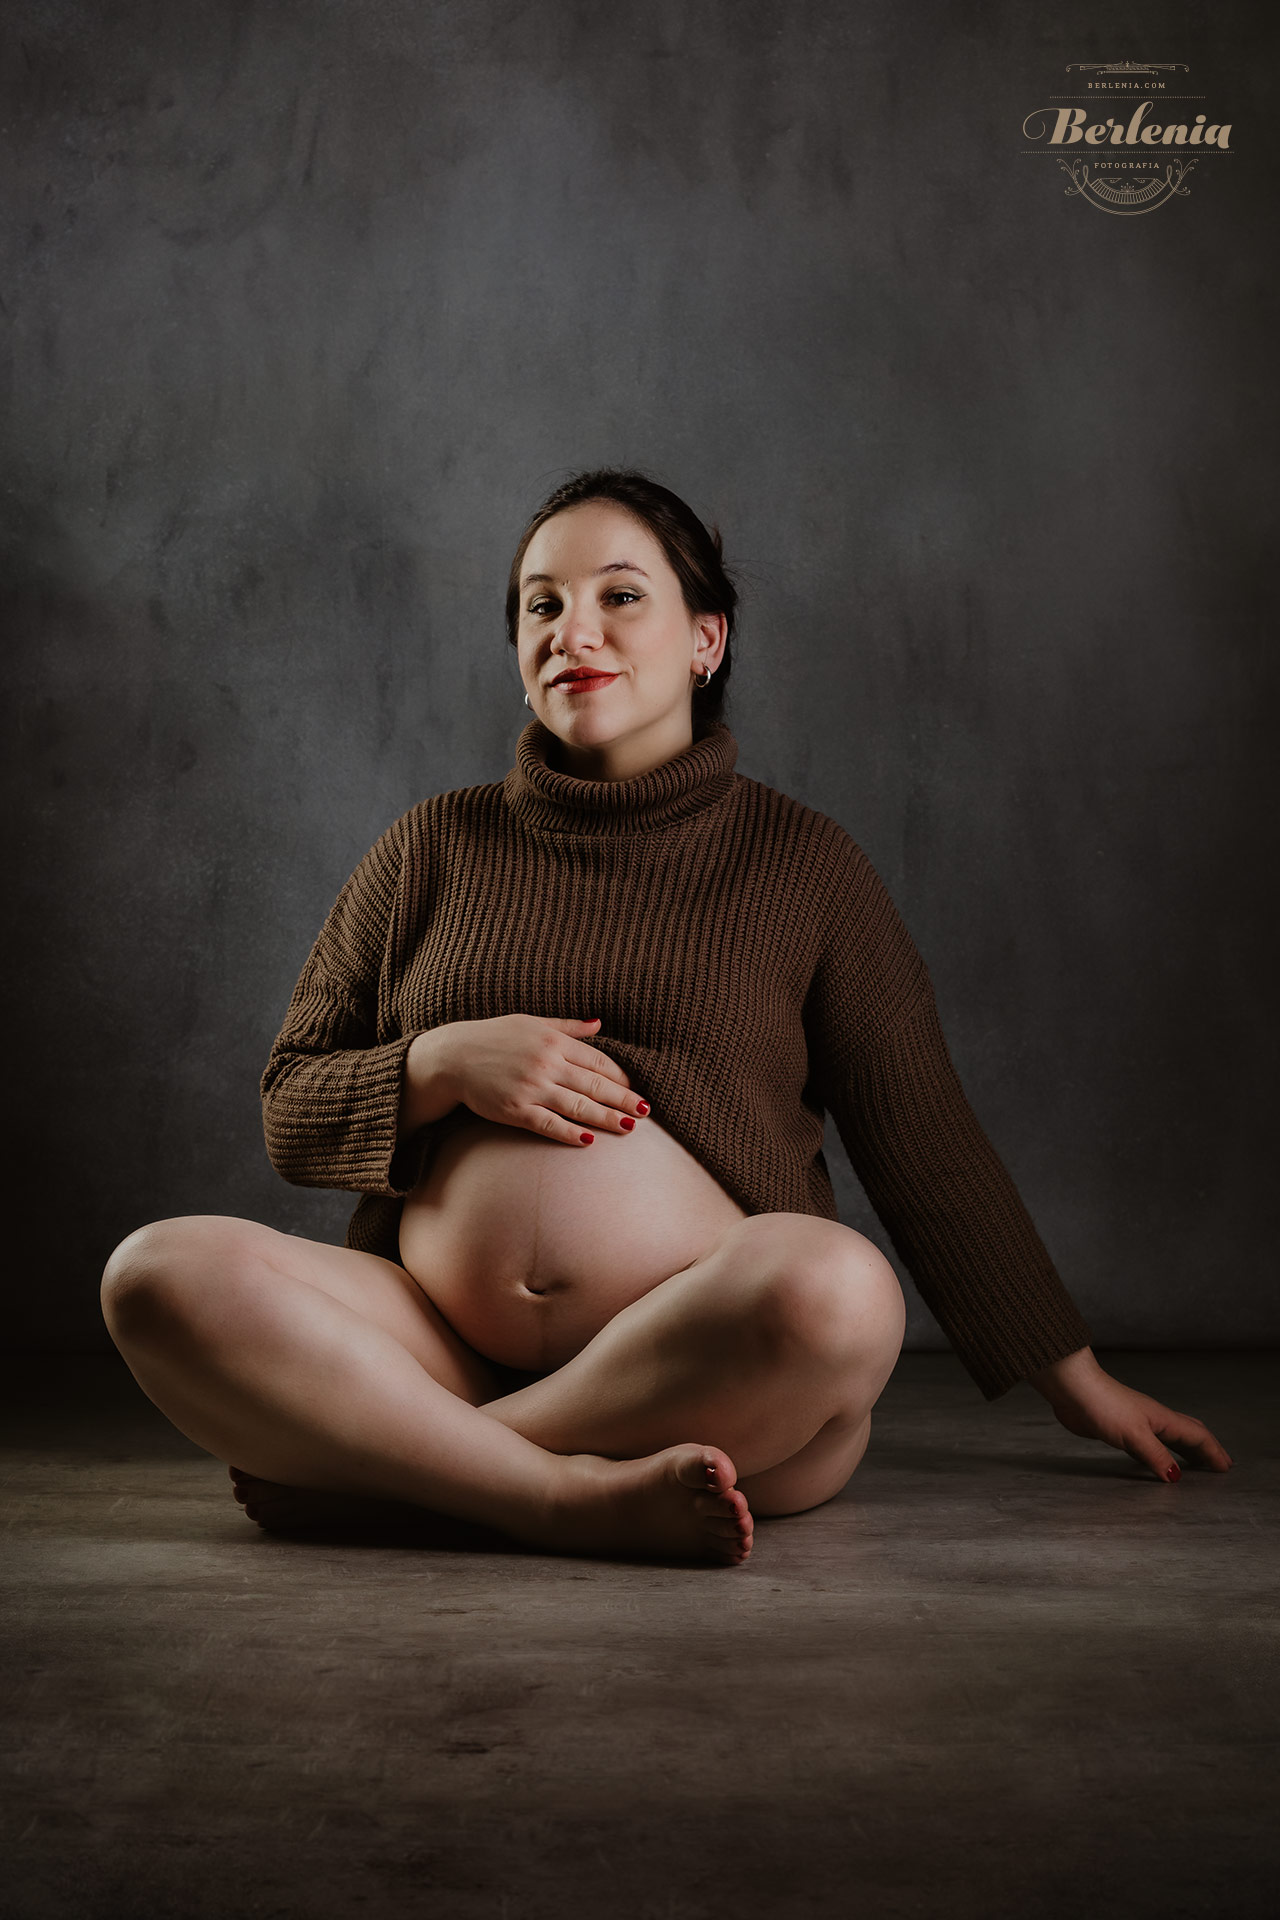 Fotografía de embarazo en estudio con pareja - Sesión de fotos embarazada - Villa Urquiza, CABA, Buenos Aires, Argentina - Berlenia Fotografía - 05